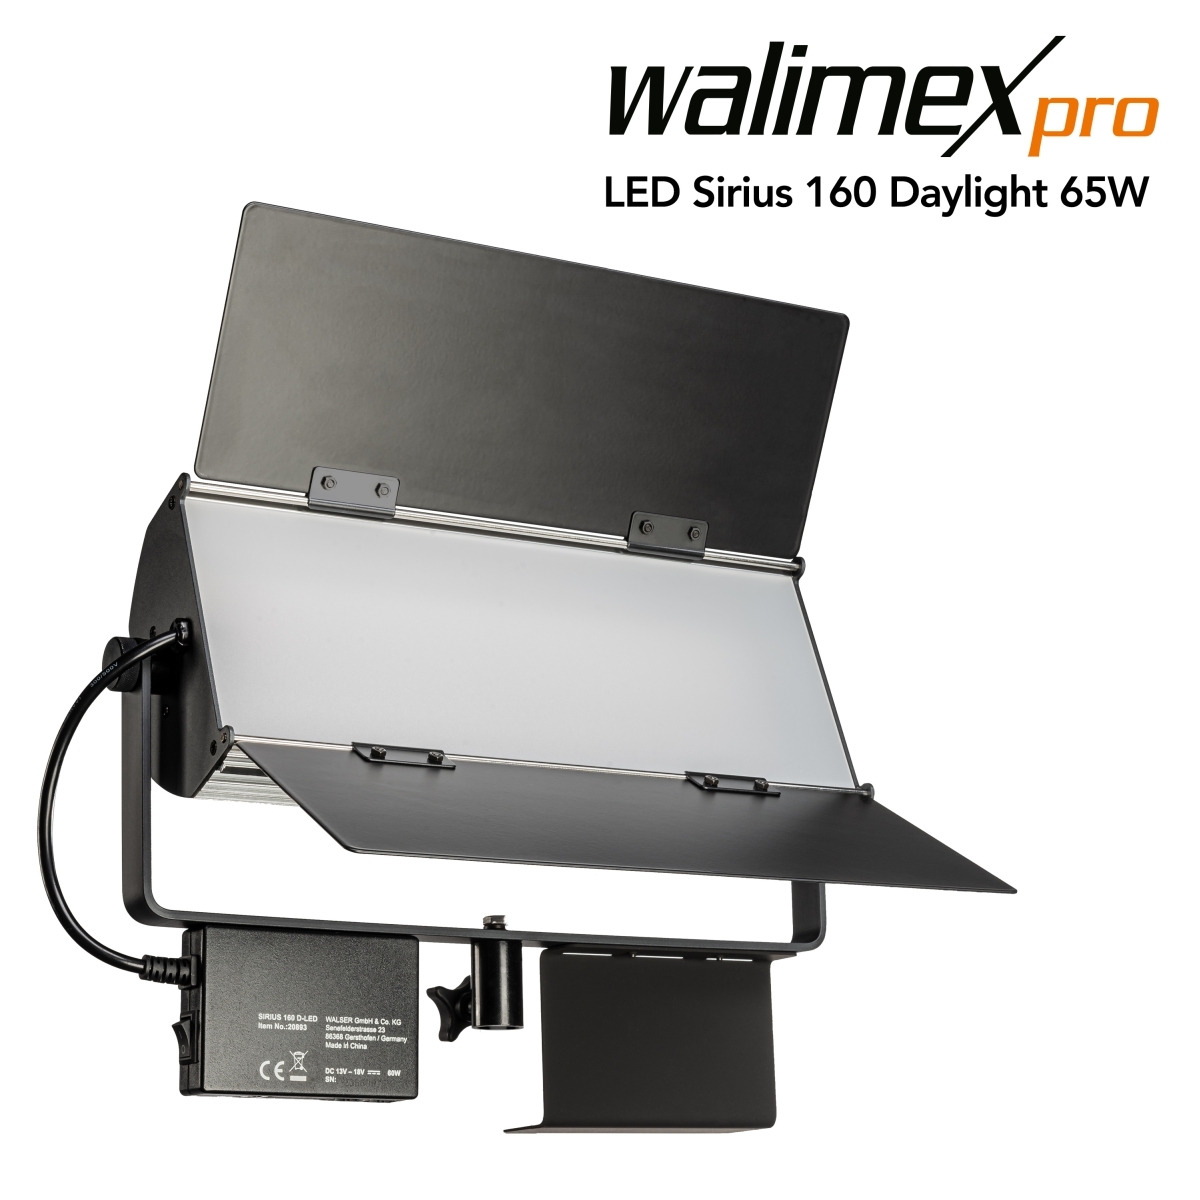 Walimex pro LED Sirius 160 Daglicht 65W LED gebiedsverlichting